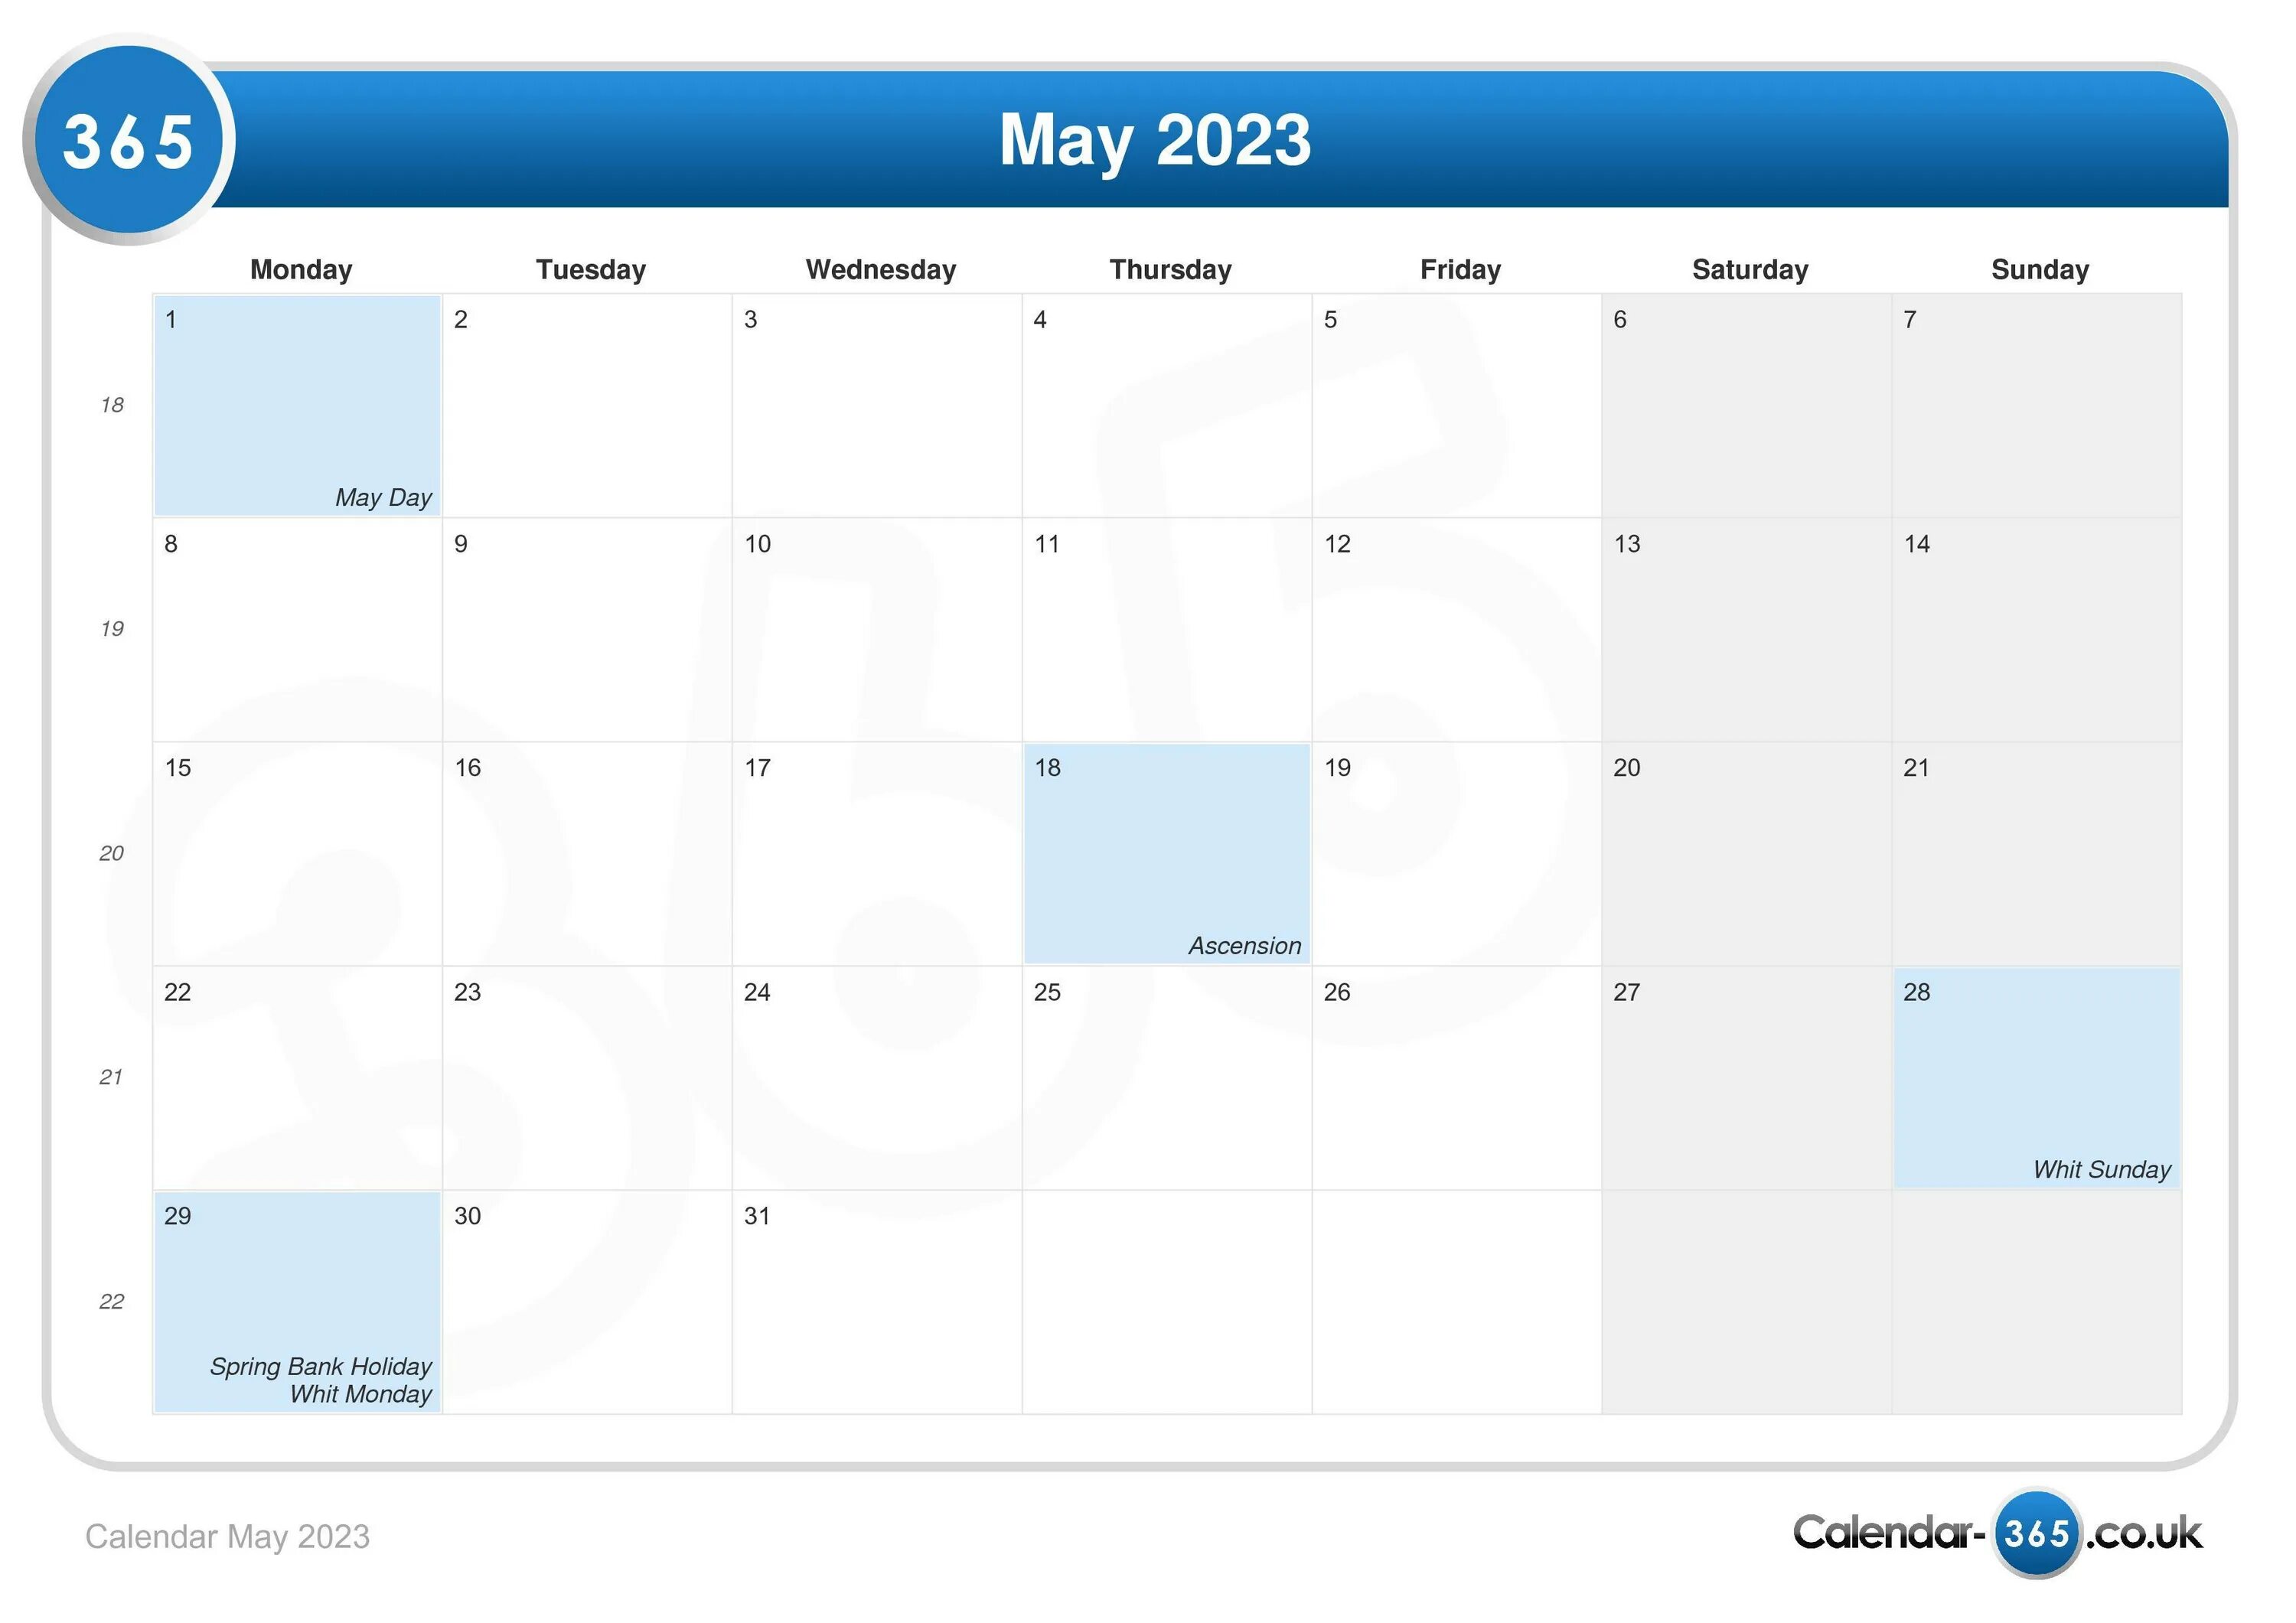 Включи календарь май. Календарь май 2023. Календарь мая 2023 года. Календарь на 2023 май 2023. Планер май 2023.